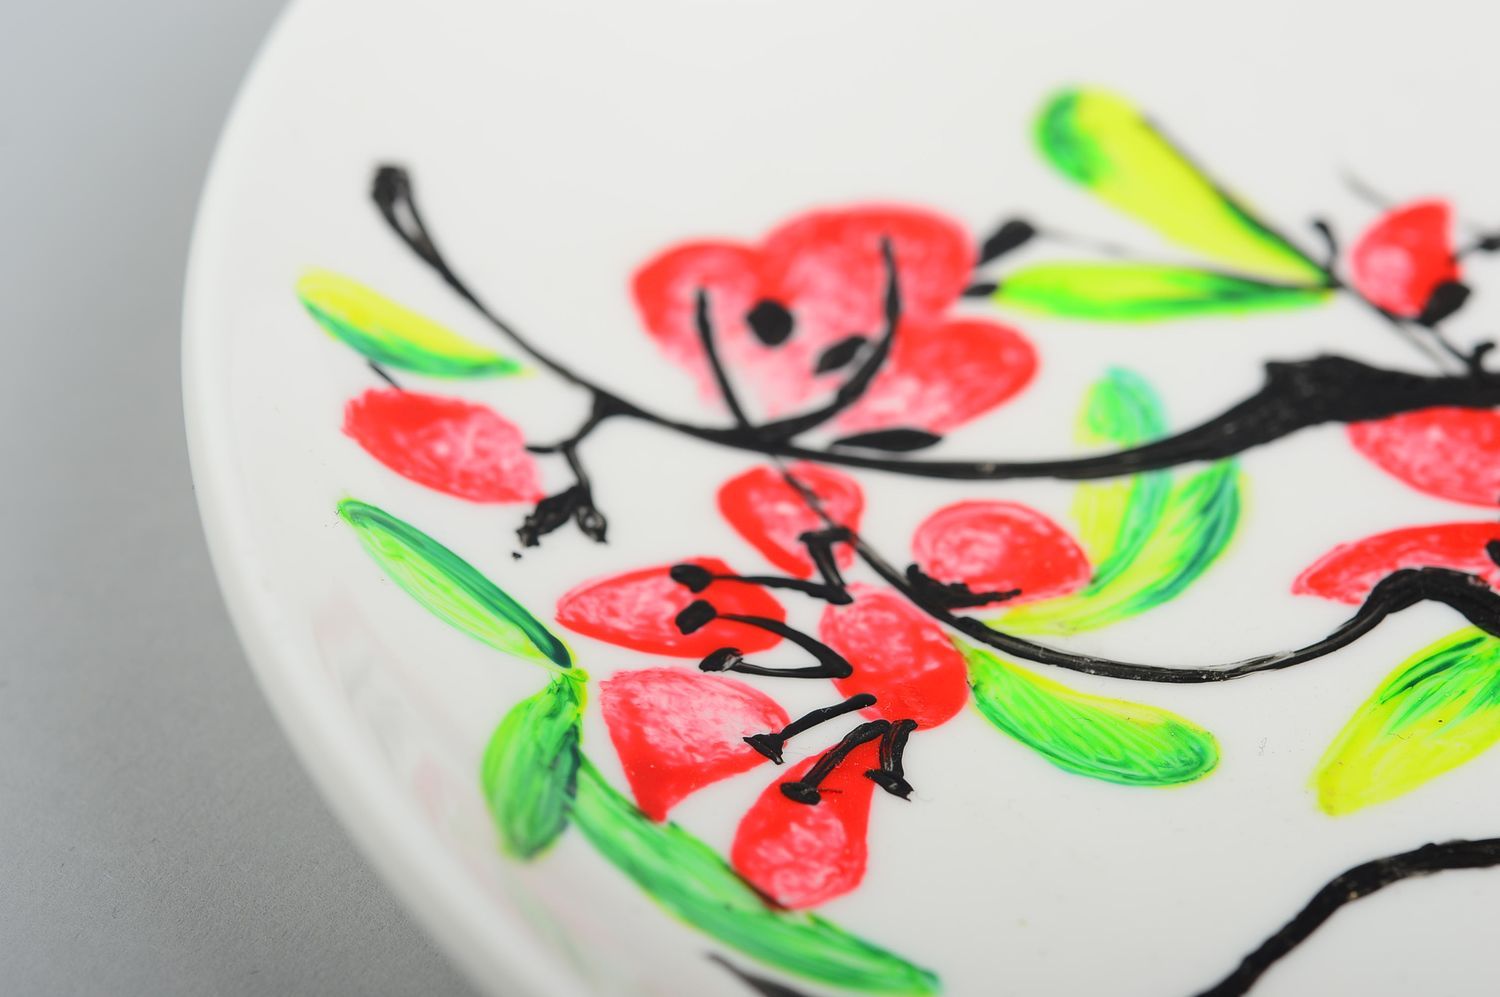 Plato de cerámica artesanal utensilio de cocina pintado menaje del hogar foto 5